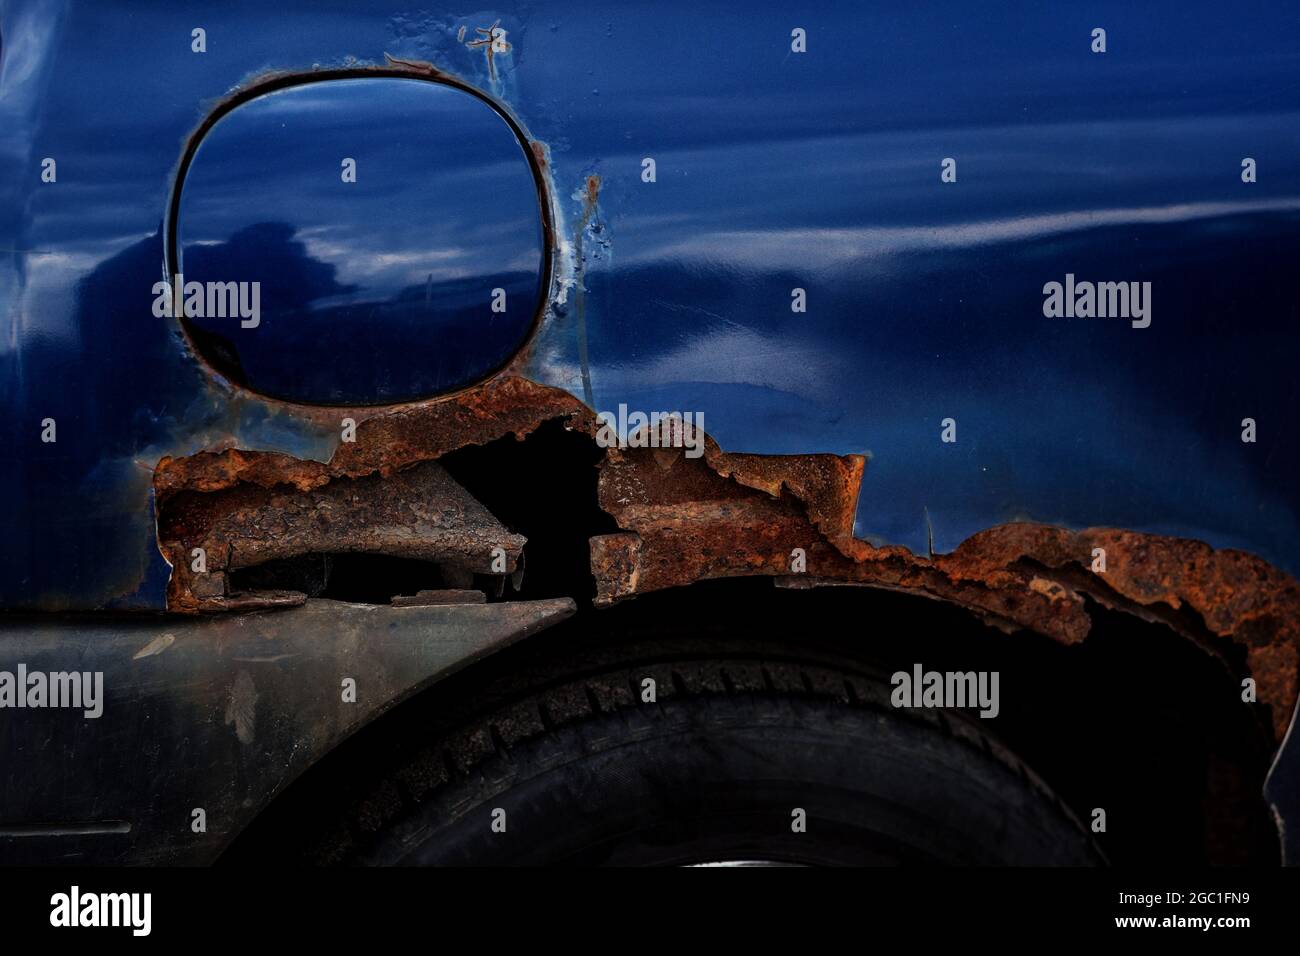 Korrosion an einem Auto Kotflügel, rostige Auto Stockfotografie - Alamy